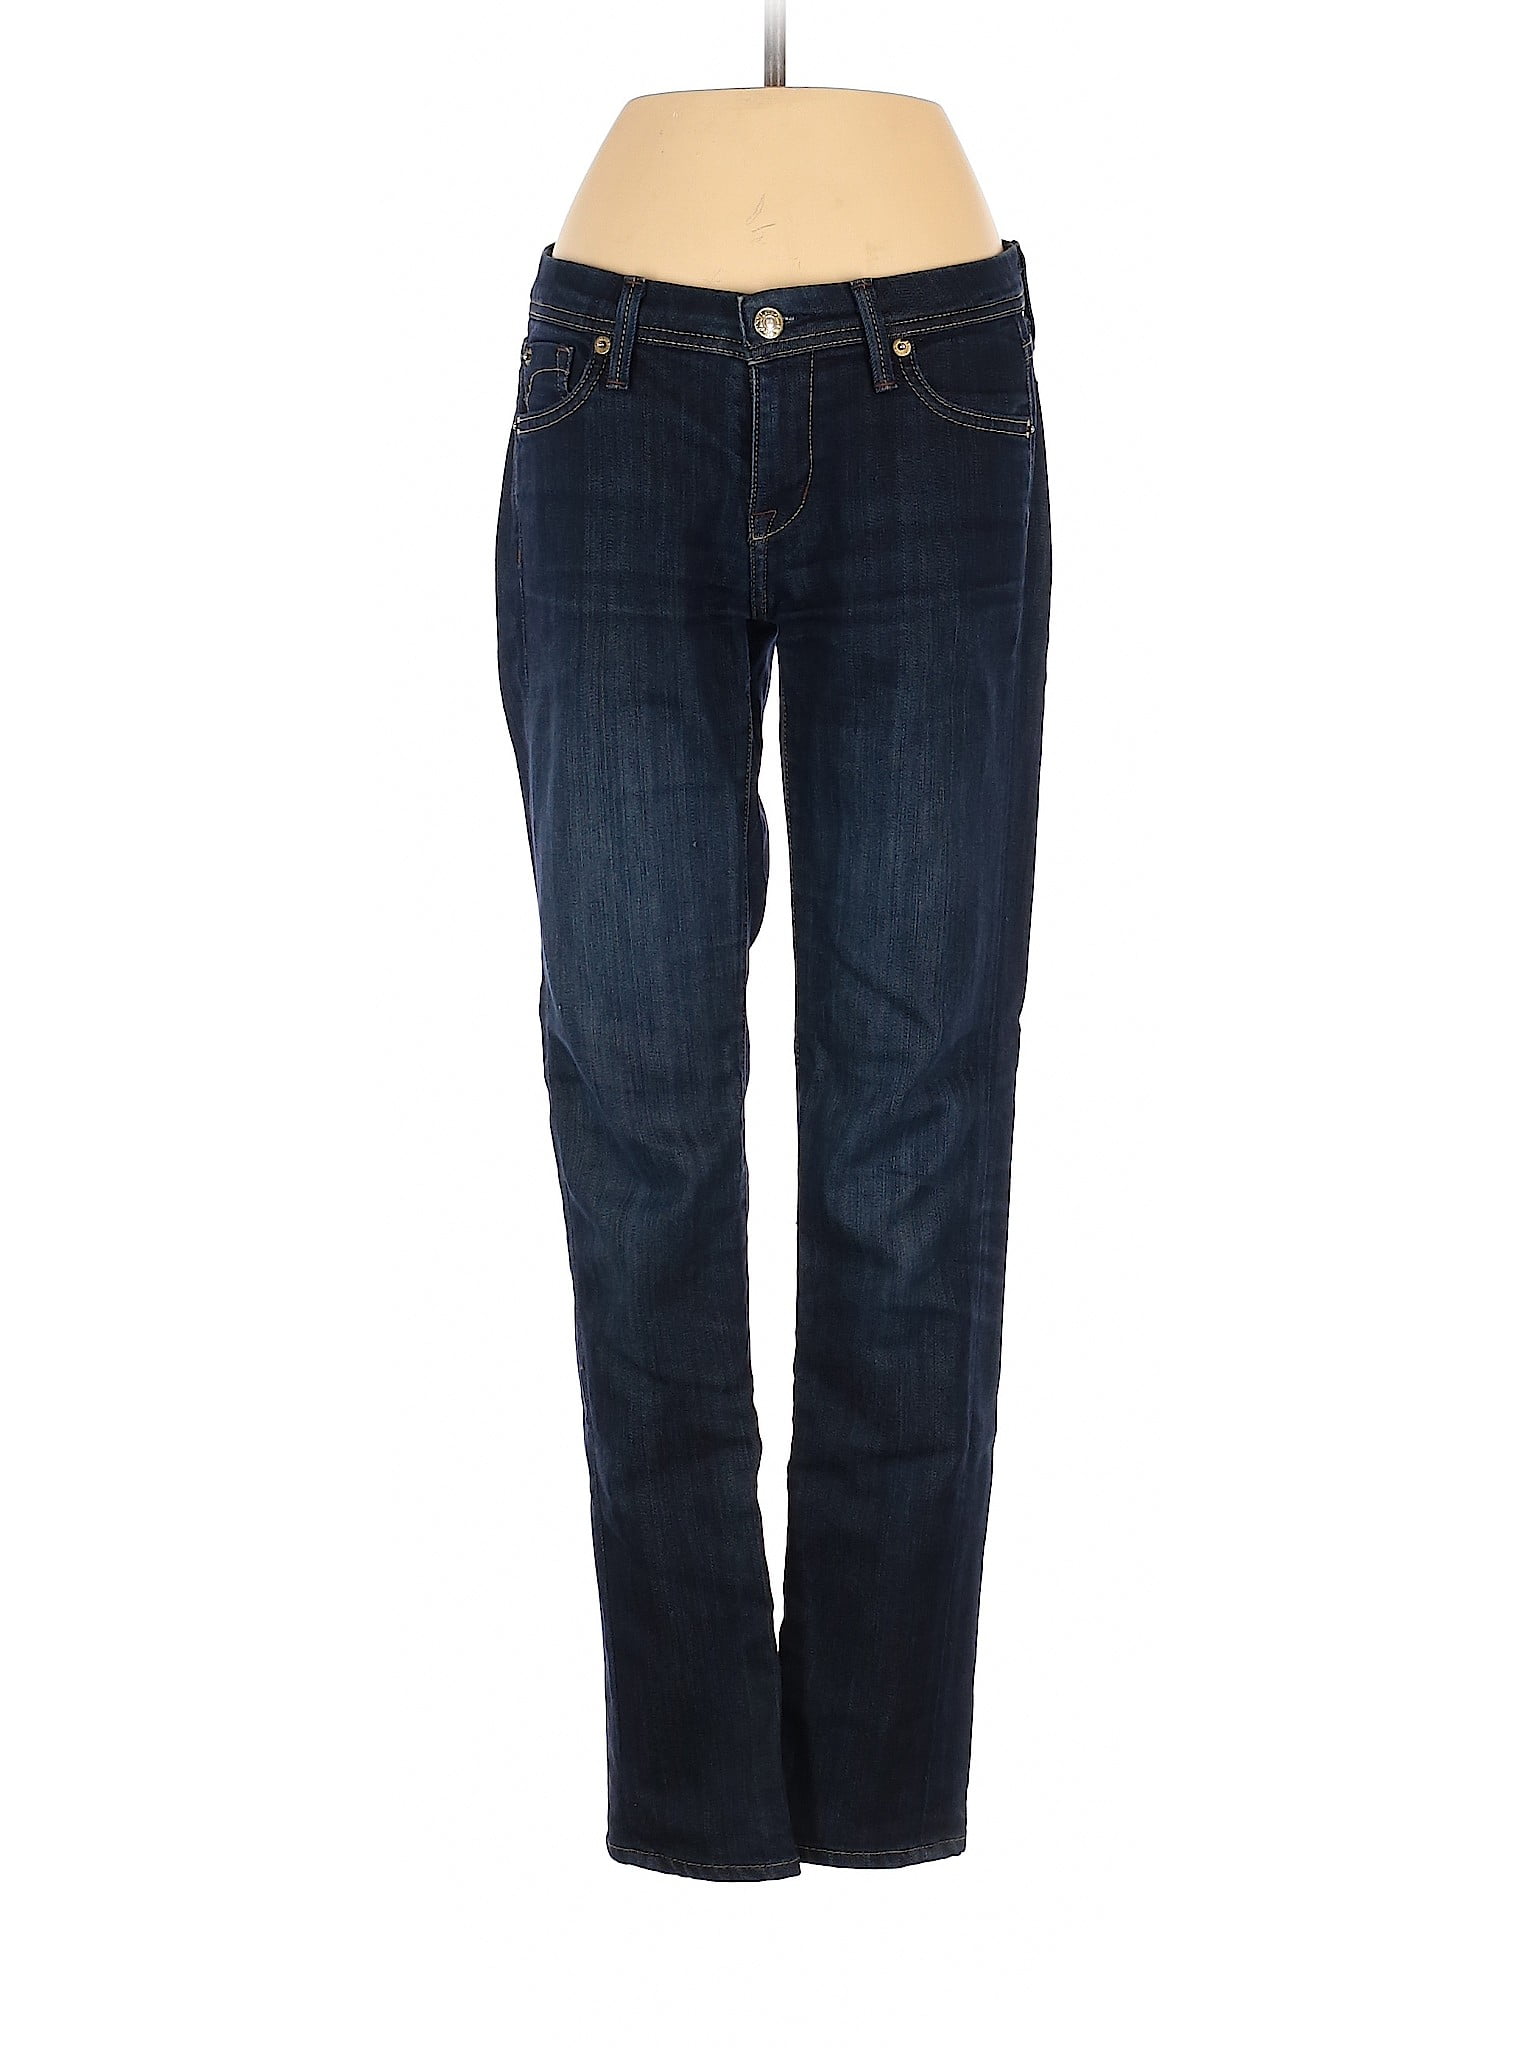 Fidelity - Pre-Owned Fidelity Women's Size 26W Jeans - Walmart.com ...